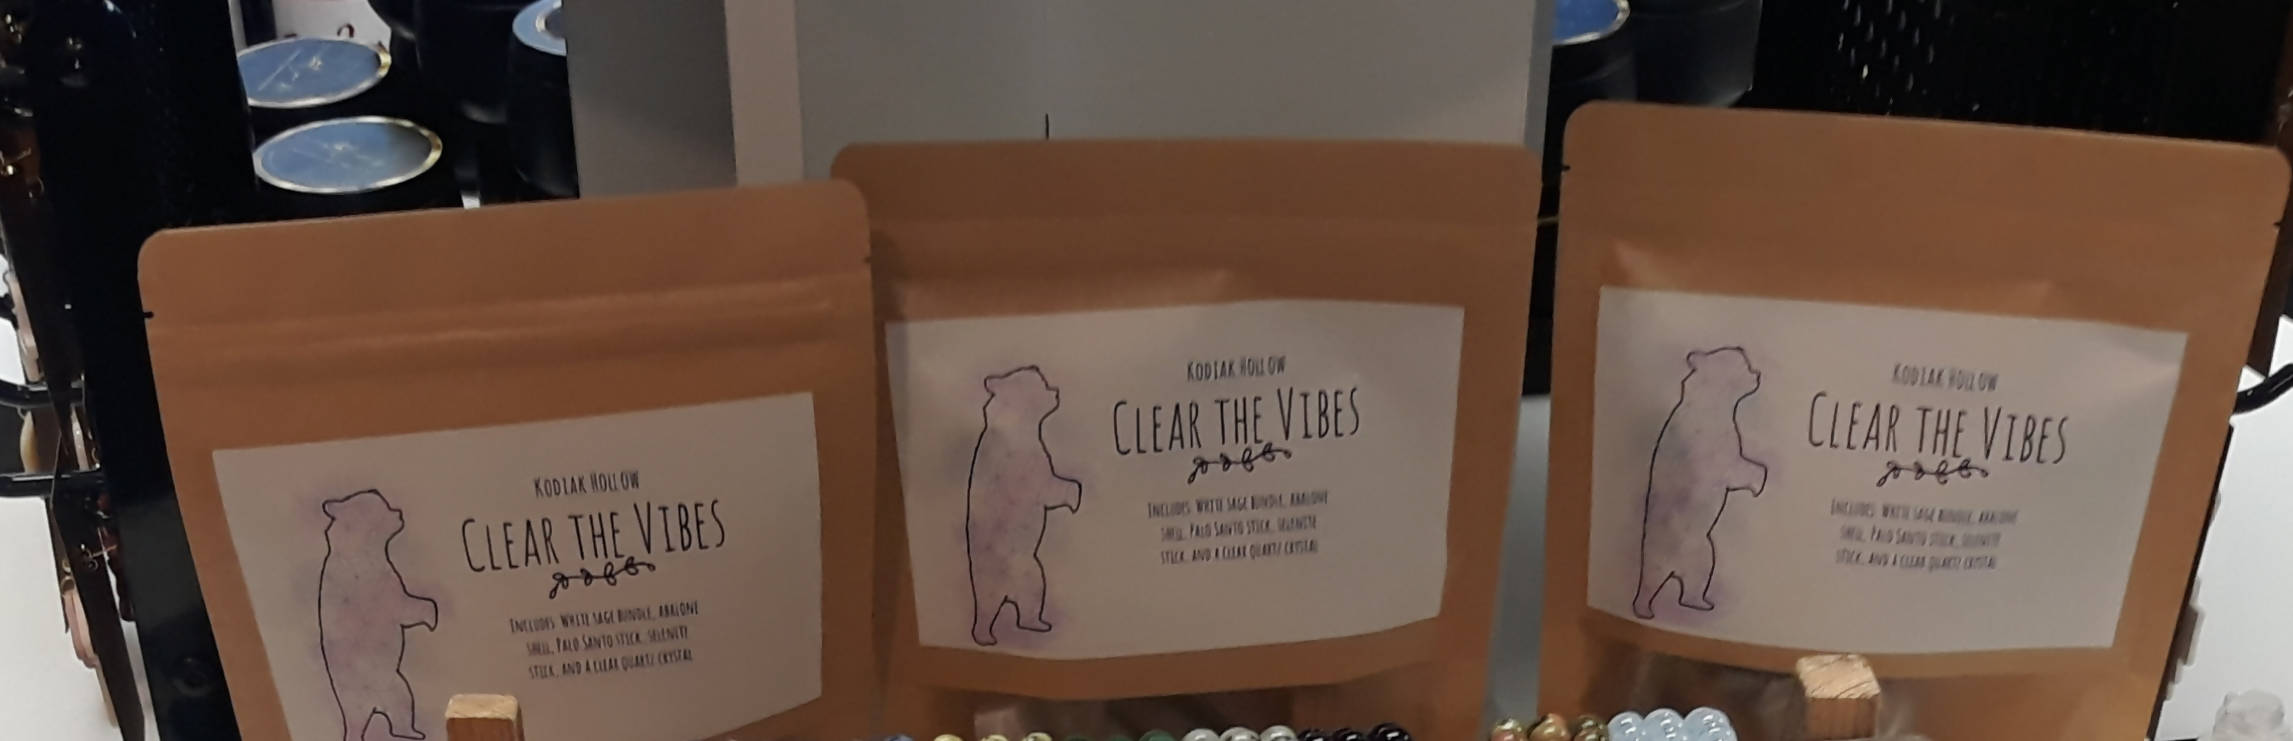 Sage Cleansing kit